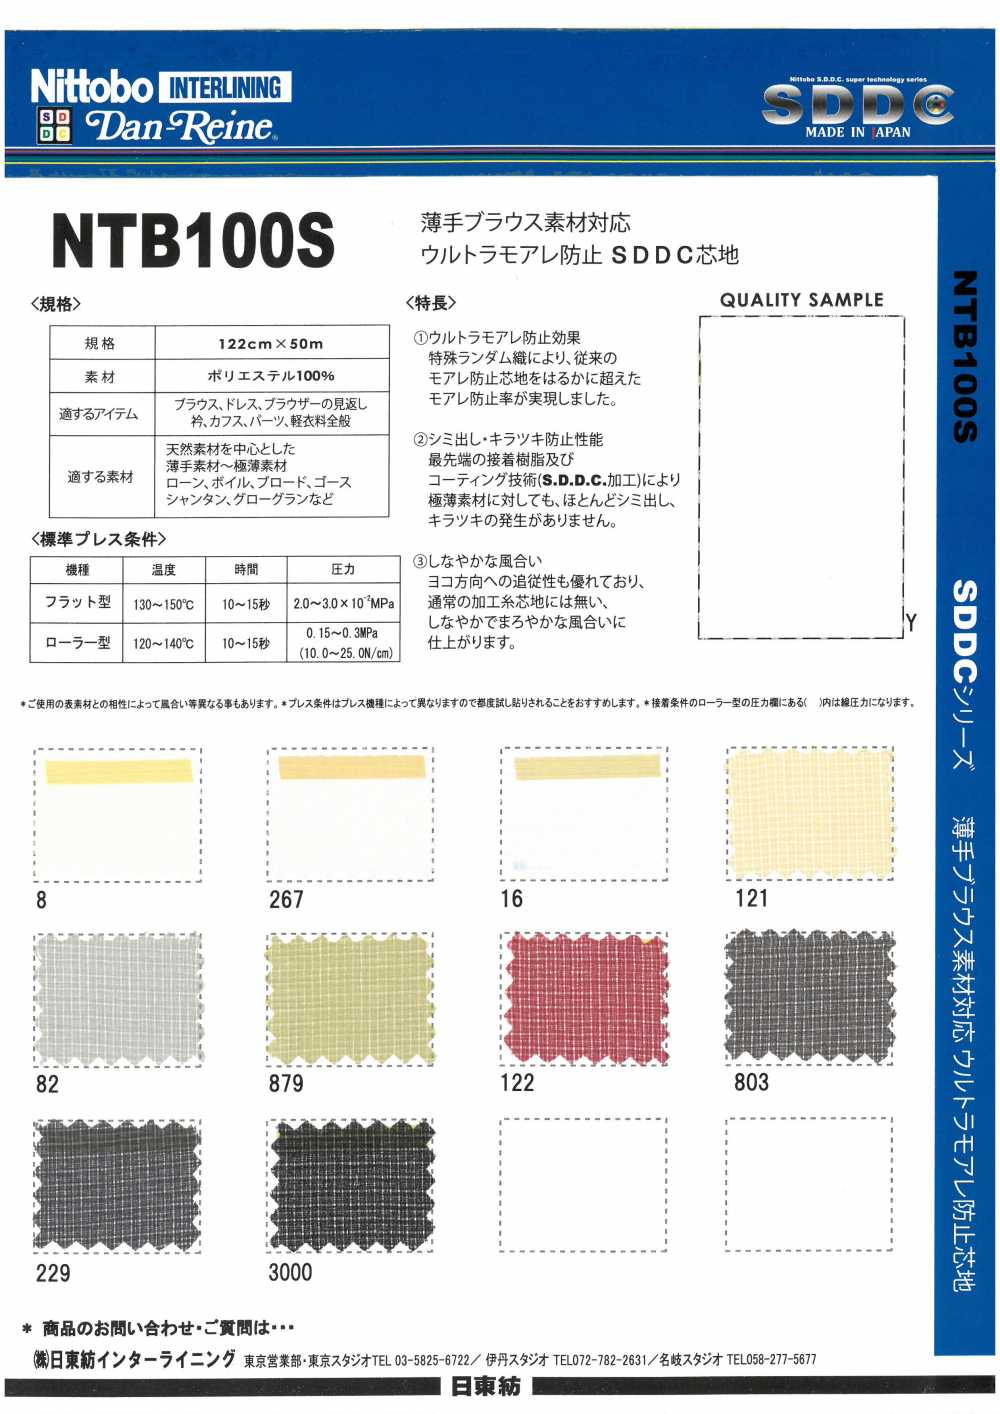 NTB100S 薄手 ブラウス素材 対応 ウルトラモアレ防止 SDDC 芯地 15D 日東紡インターライニング